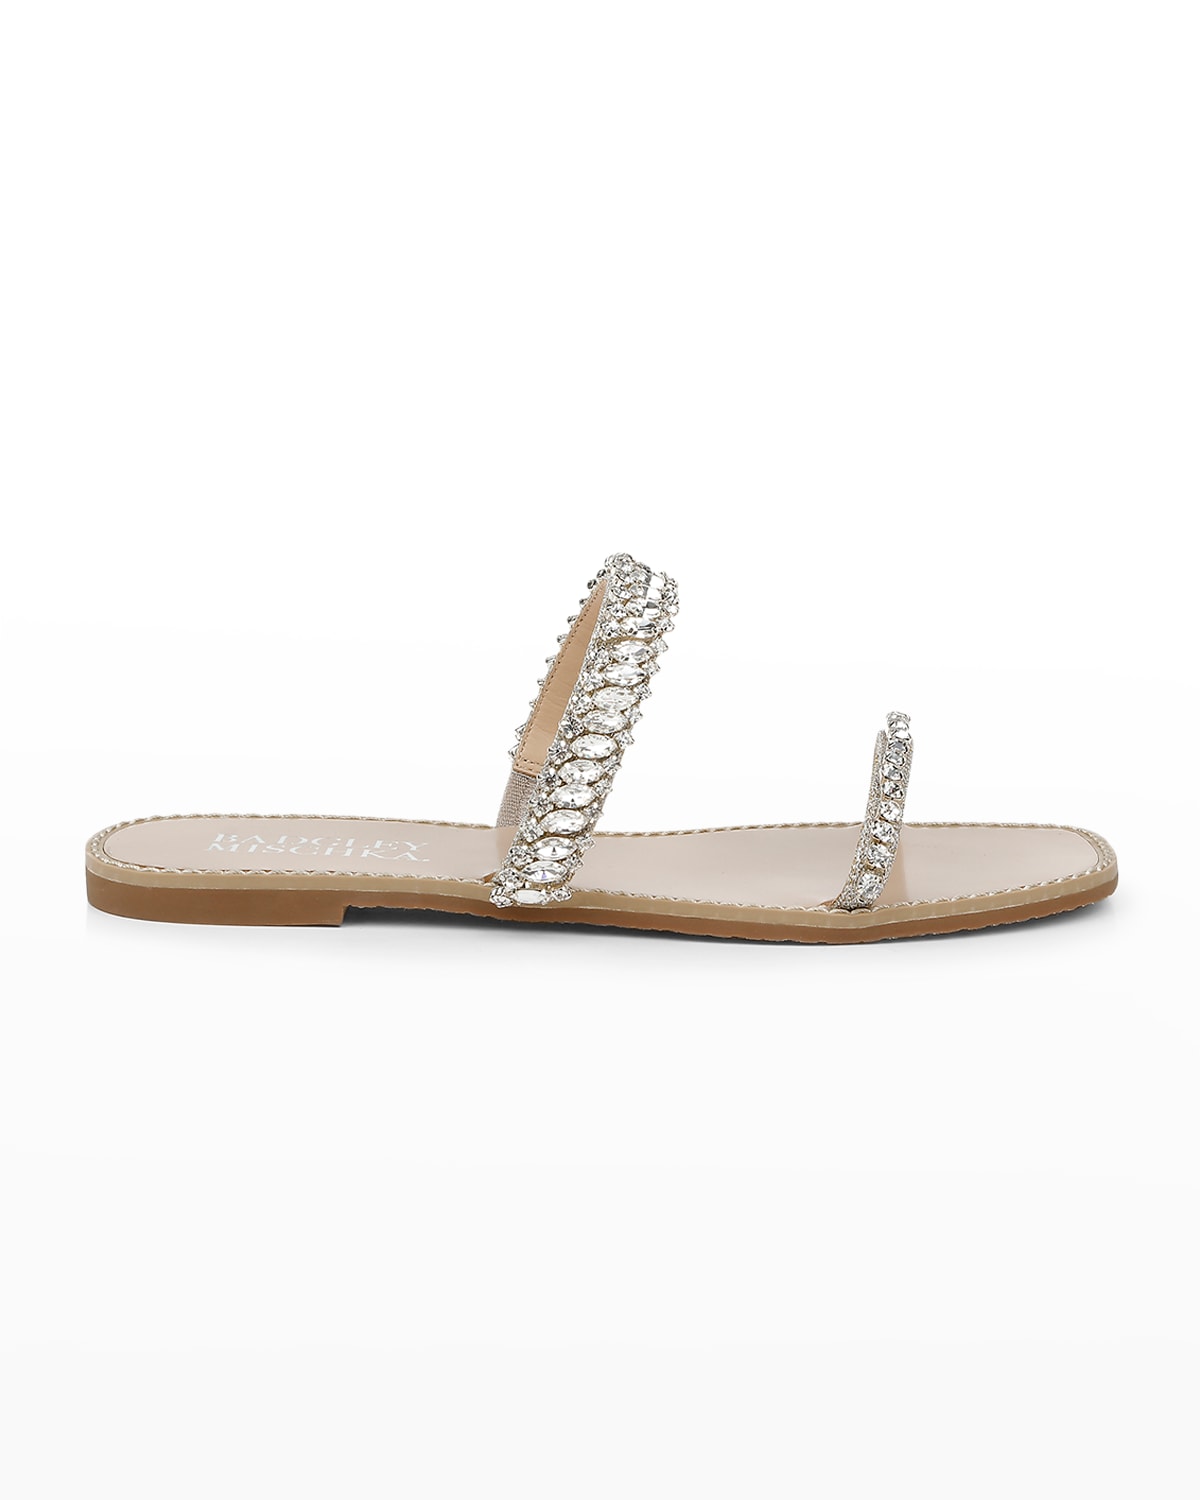 Badgley Mischka Thina Metallic Crystal Dual-Band Sandals